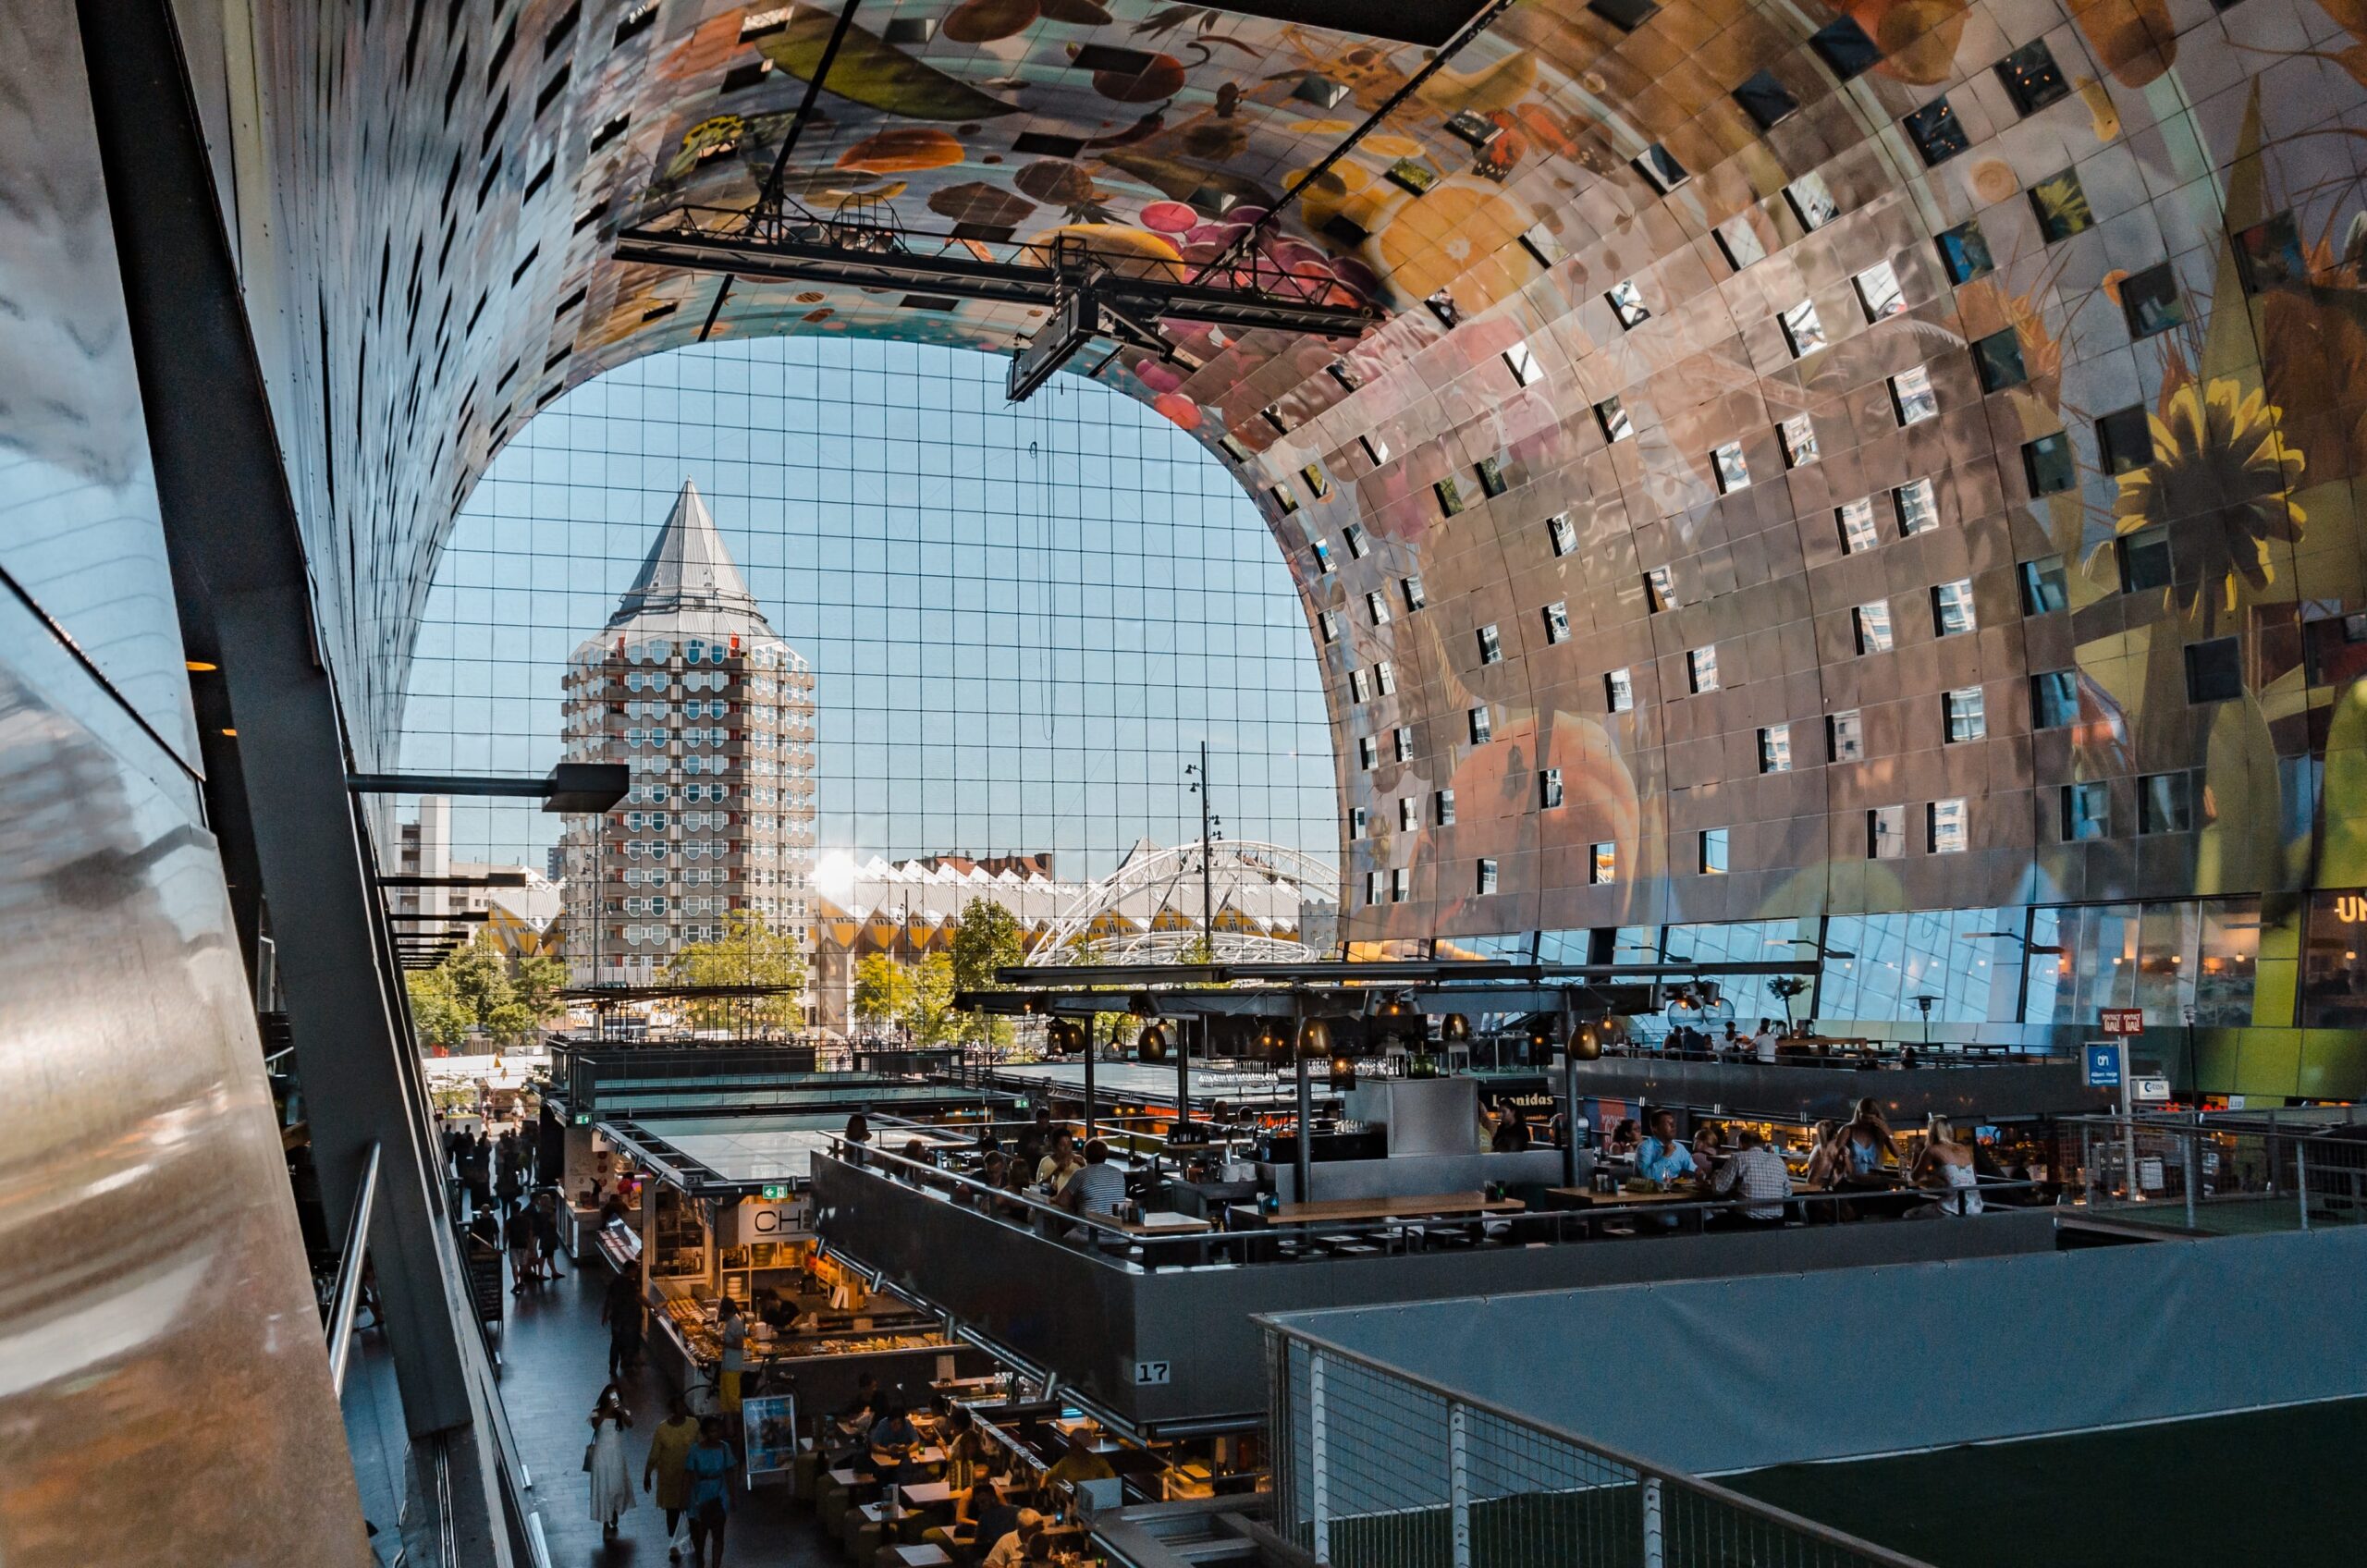 Foodhallen, Rotterdam, Netherlands